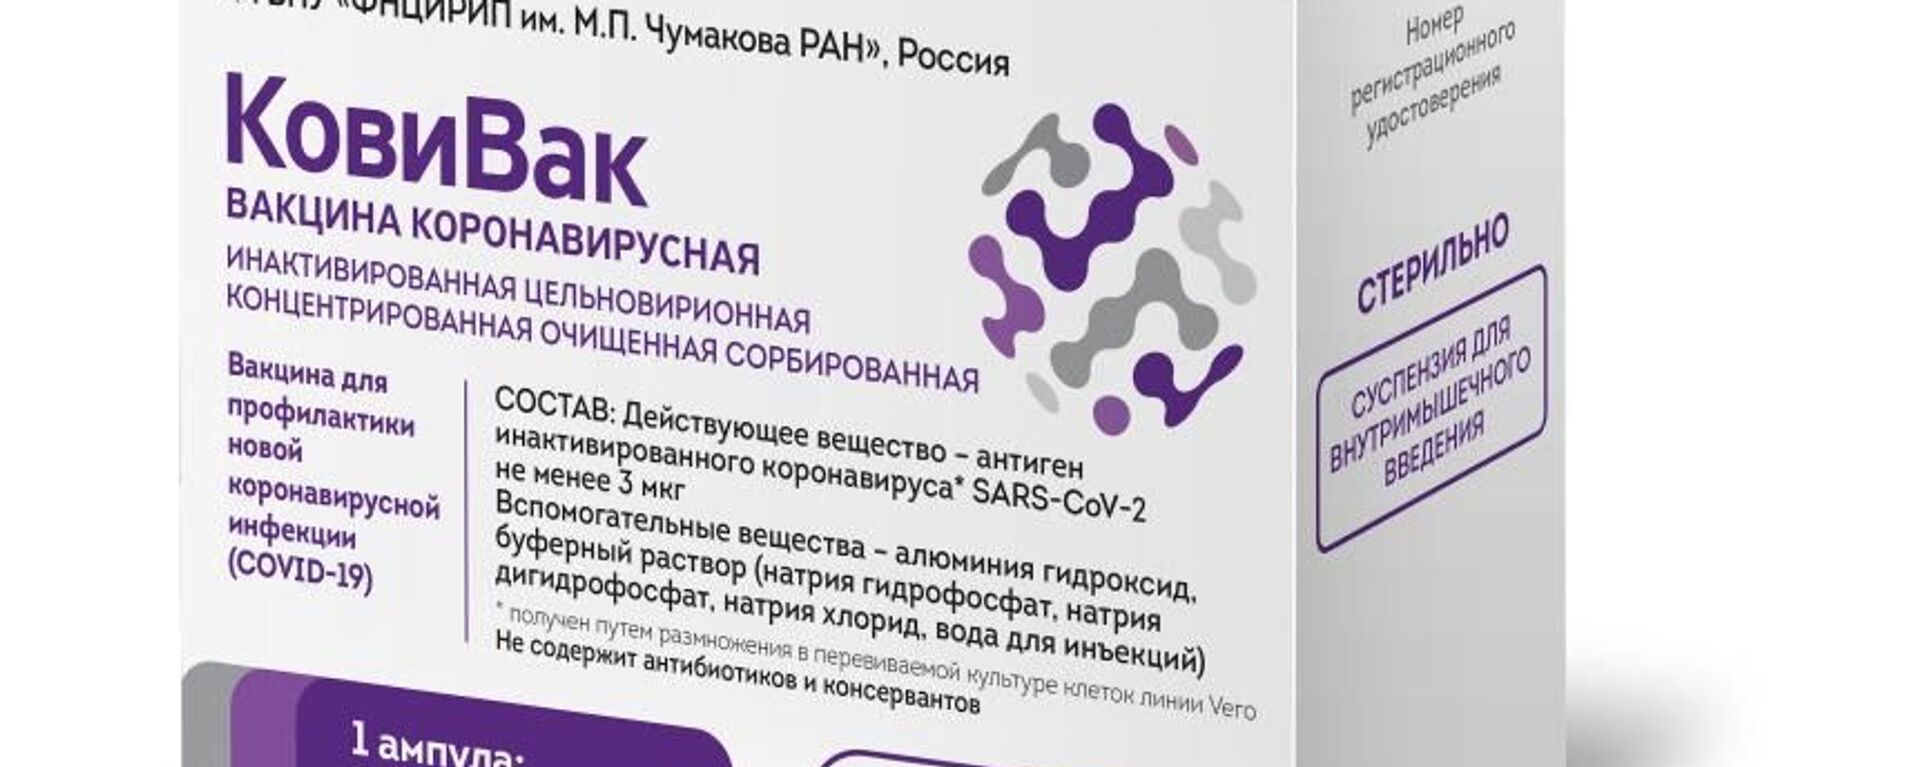 В России зарегистрирована вакцина Ковивак от COVID-19  - Sputnik Ўзбекистон, 1920, 20.02.2021